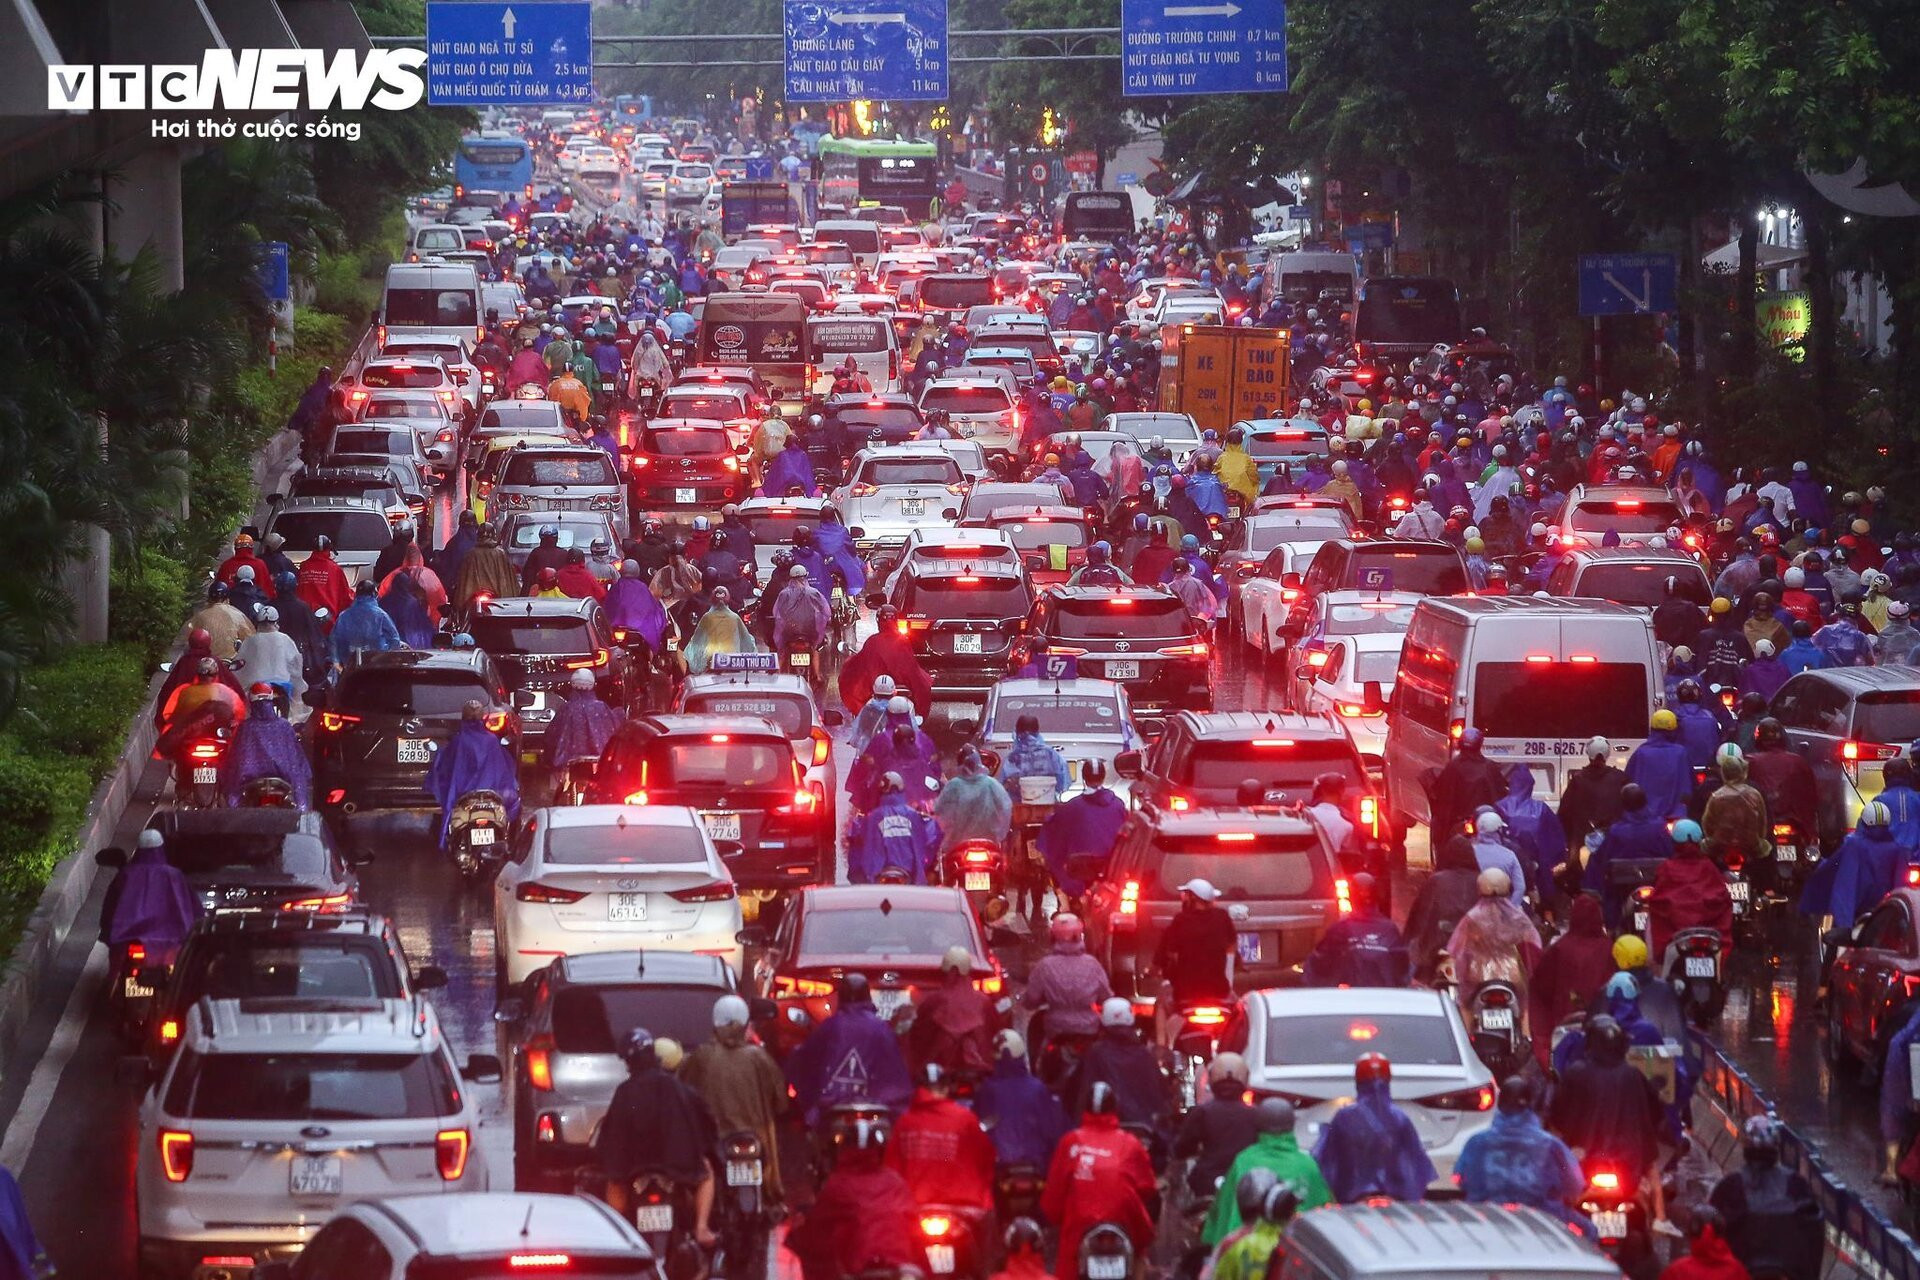 Đường phố Hà Nội hỗn loạn từ sáng đến tối vì mưa, người dân chật vật di chuyển - 4